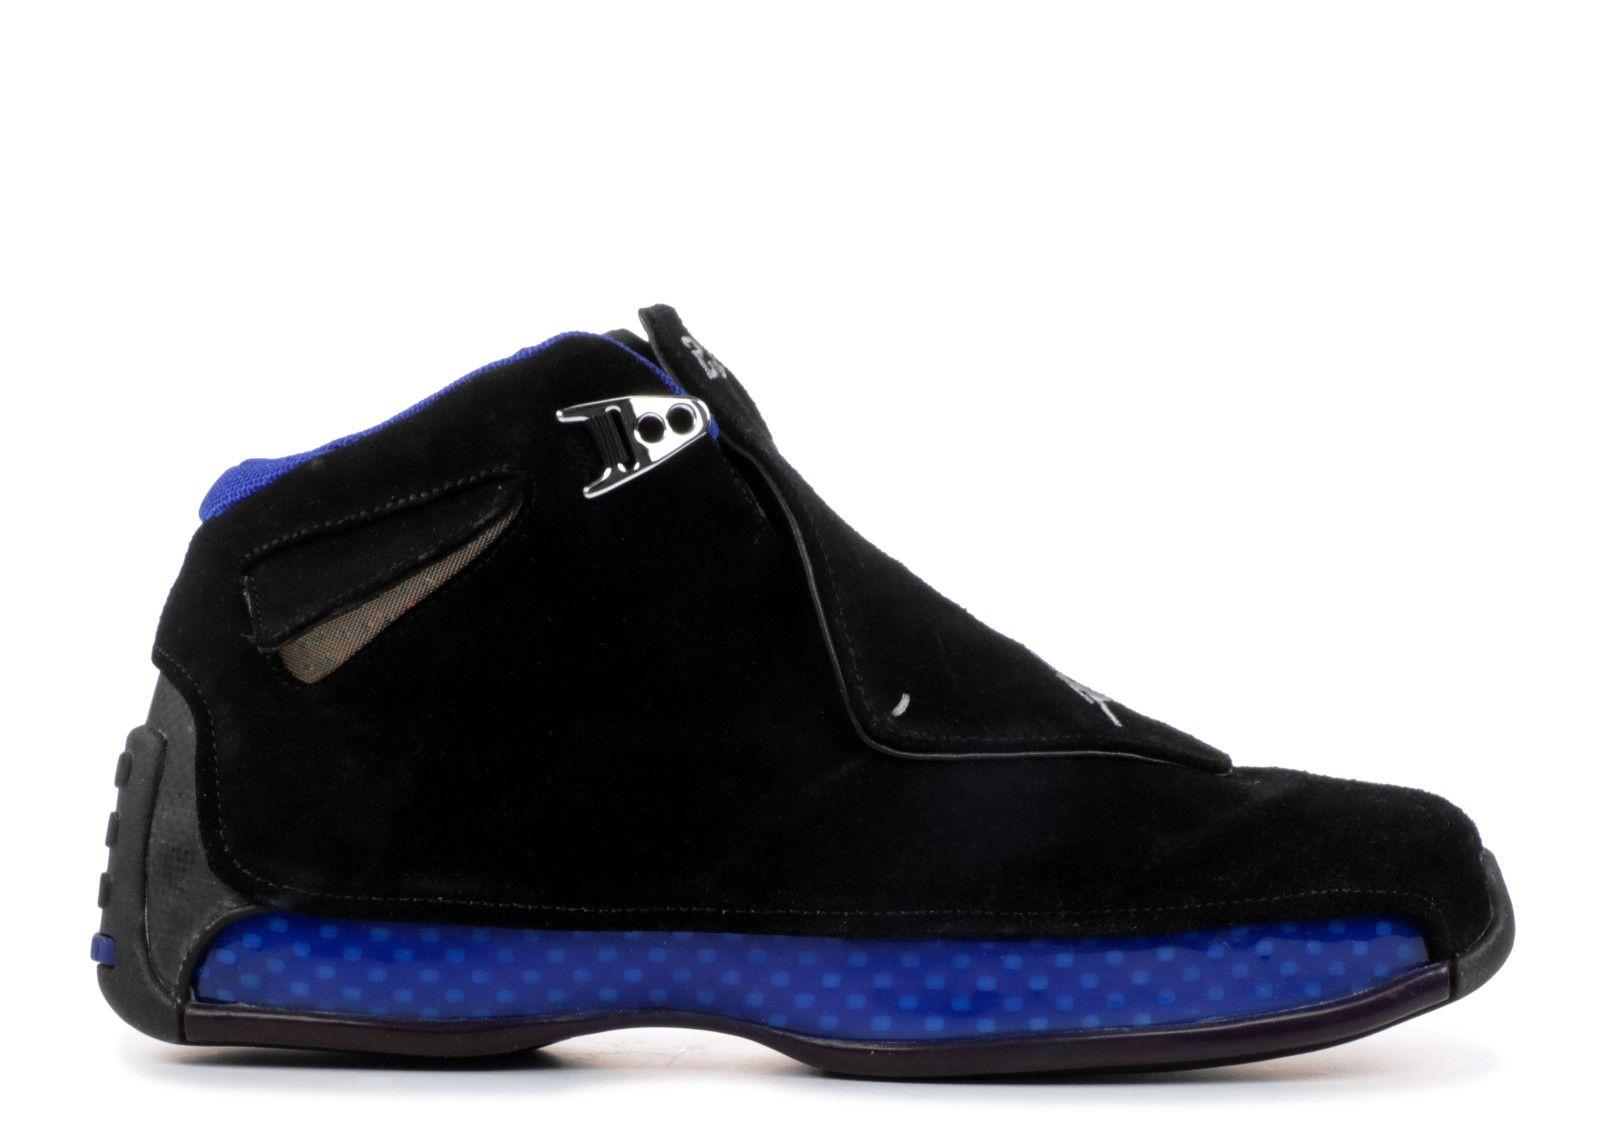 Blue and Black Jordan Logo - Air Jordan 18 - Air Jordan - 305869 041 - black/sport royal | Flight ...